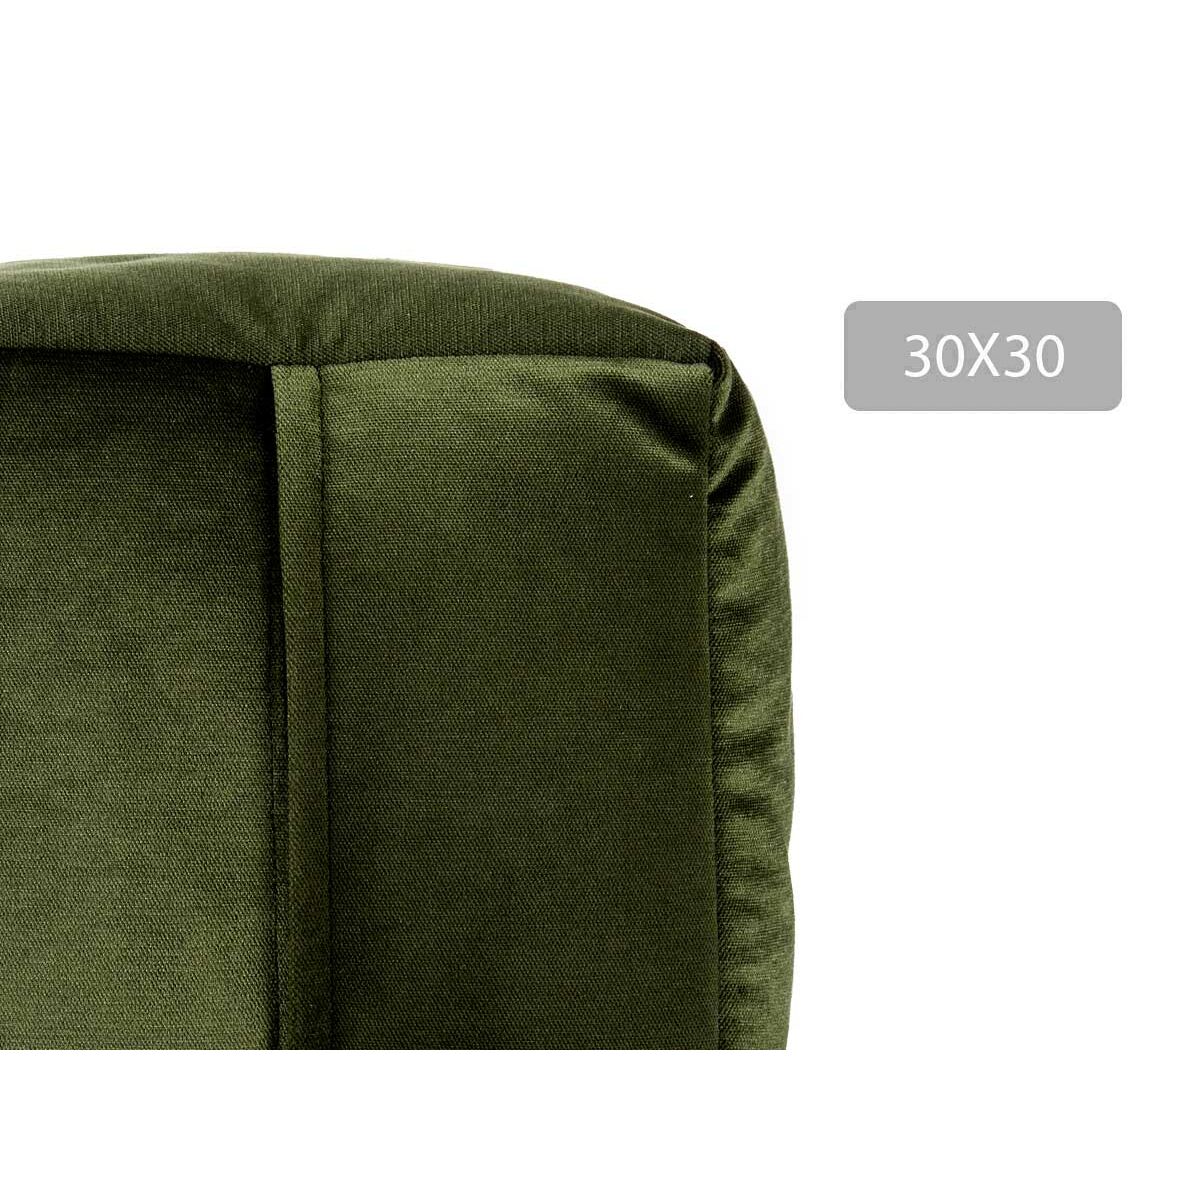 Puff Velluto Verde 30 x 30 x 30 cm (4 Unità)